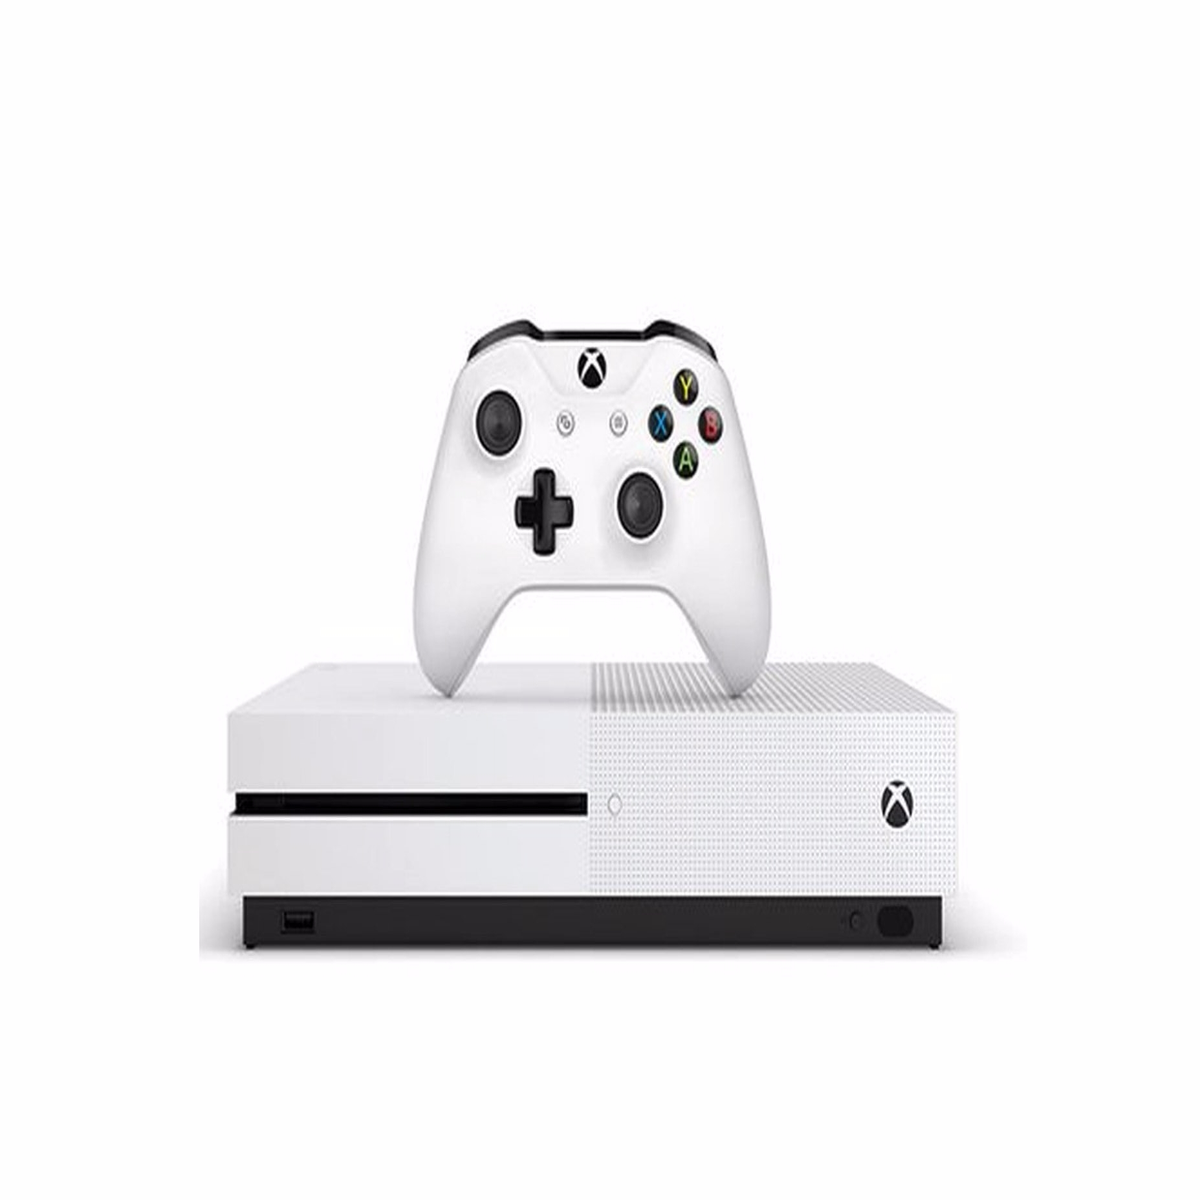 Gears of War 4 Is Cross-Buy, Cross-Play on Xbox One, Windows 10